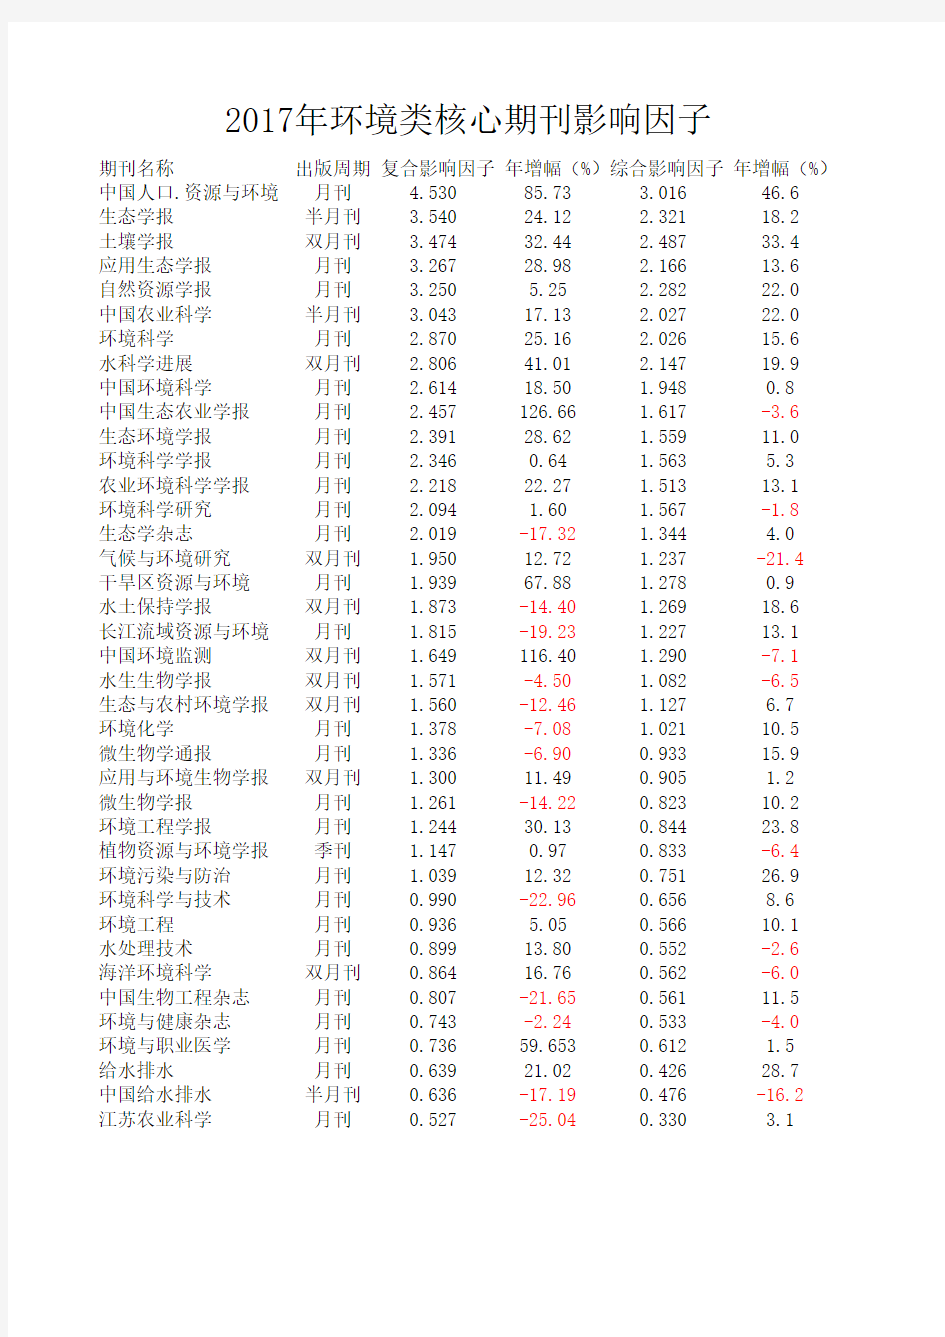 年环境类中文核心期刊影响因子排序